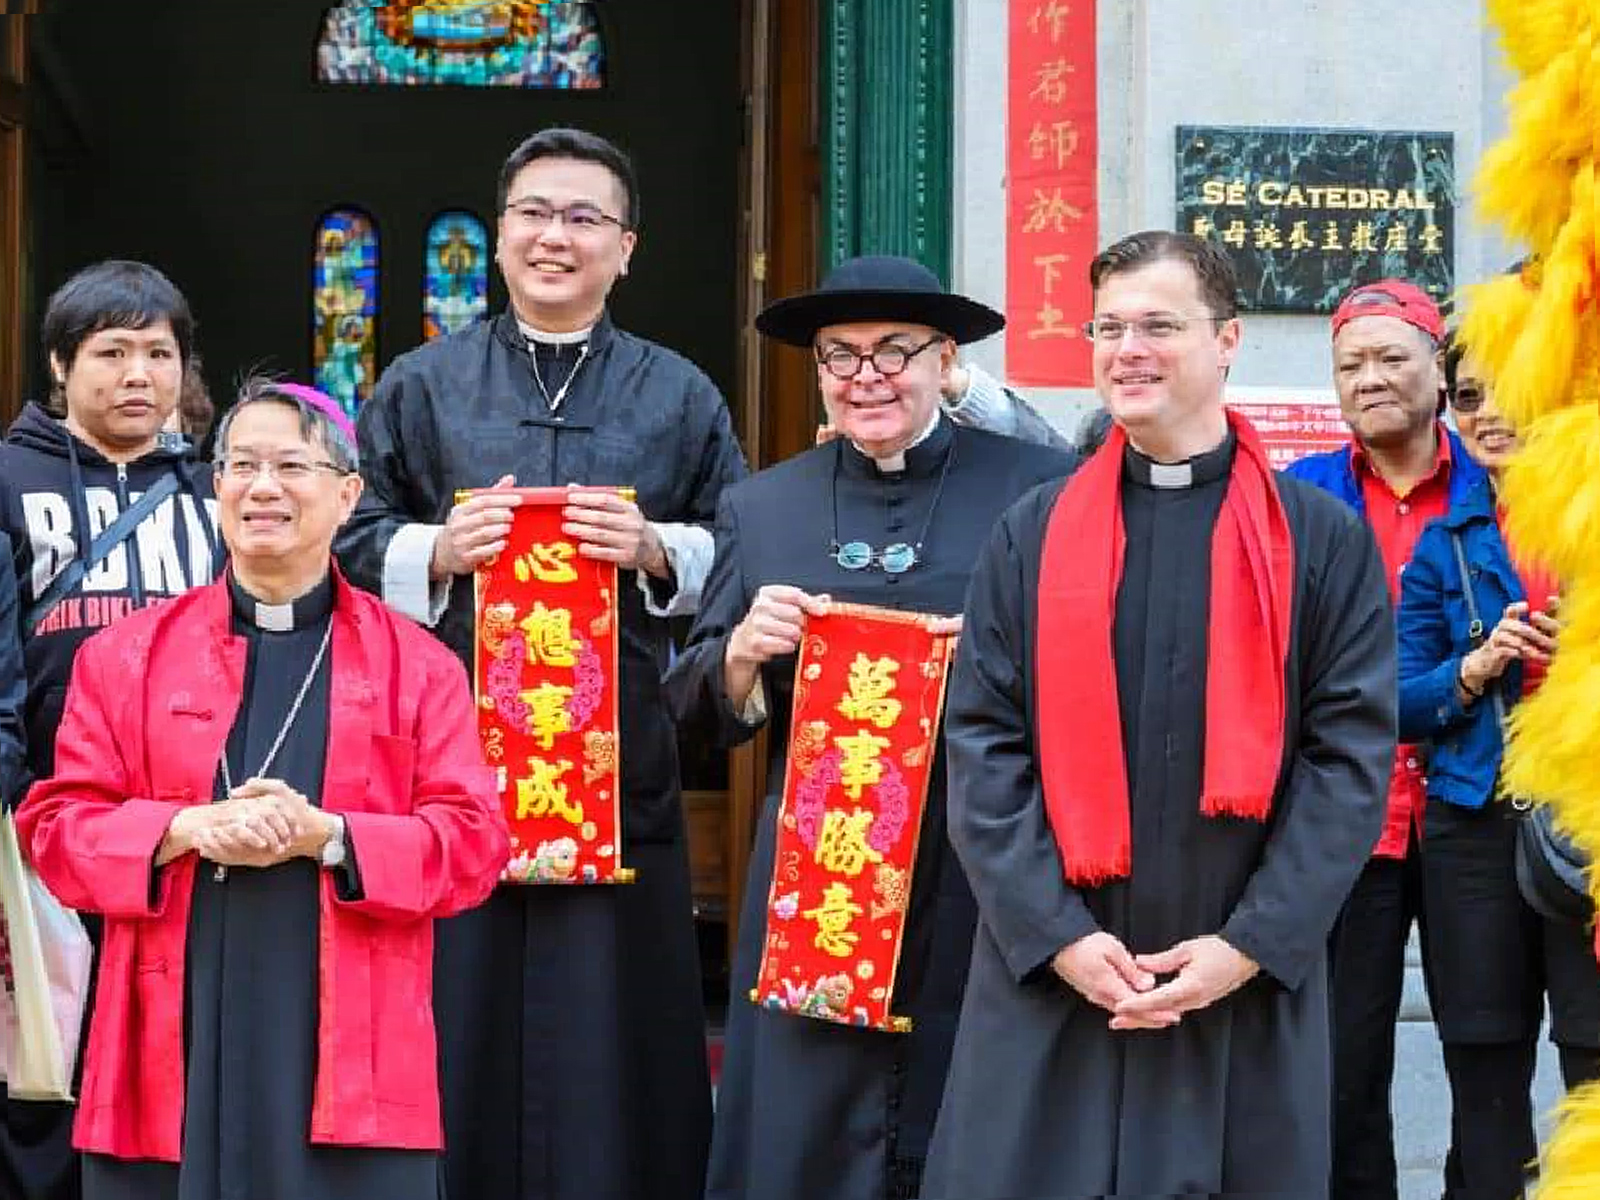 Como-é-ser-sacerdote-e-missionário-na-China-9